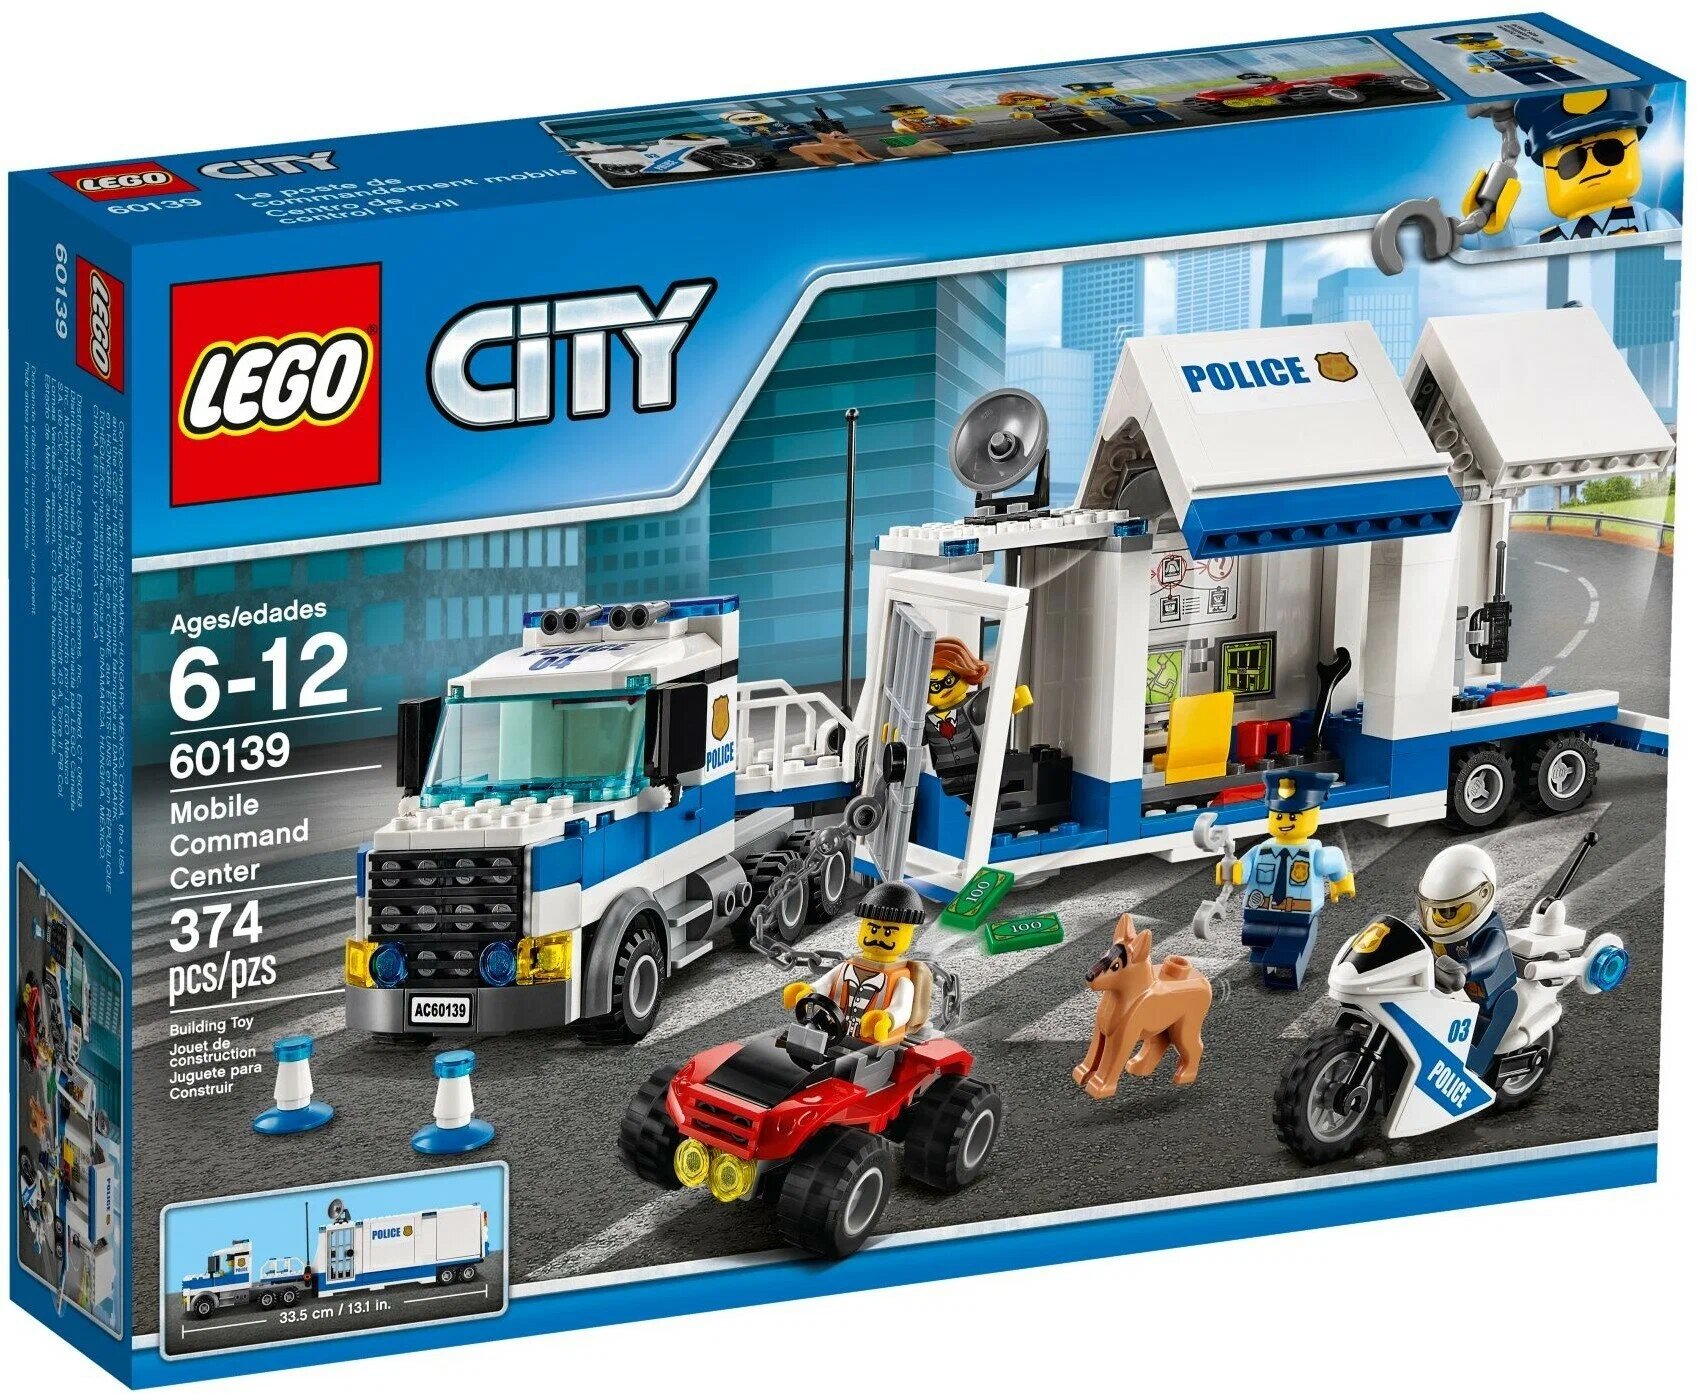 Конструктор LEGO City 60139 Мобильный командный центр, 374 дет.